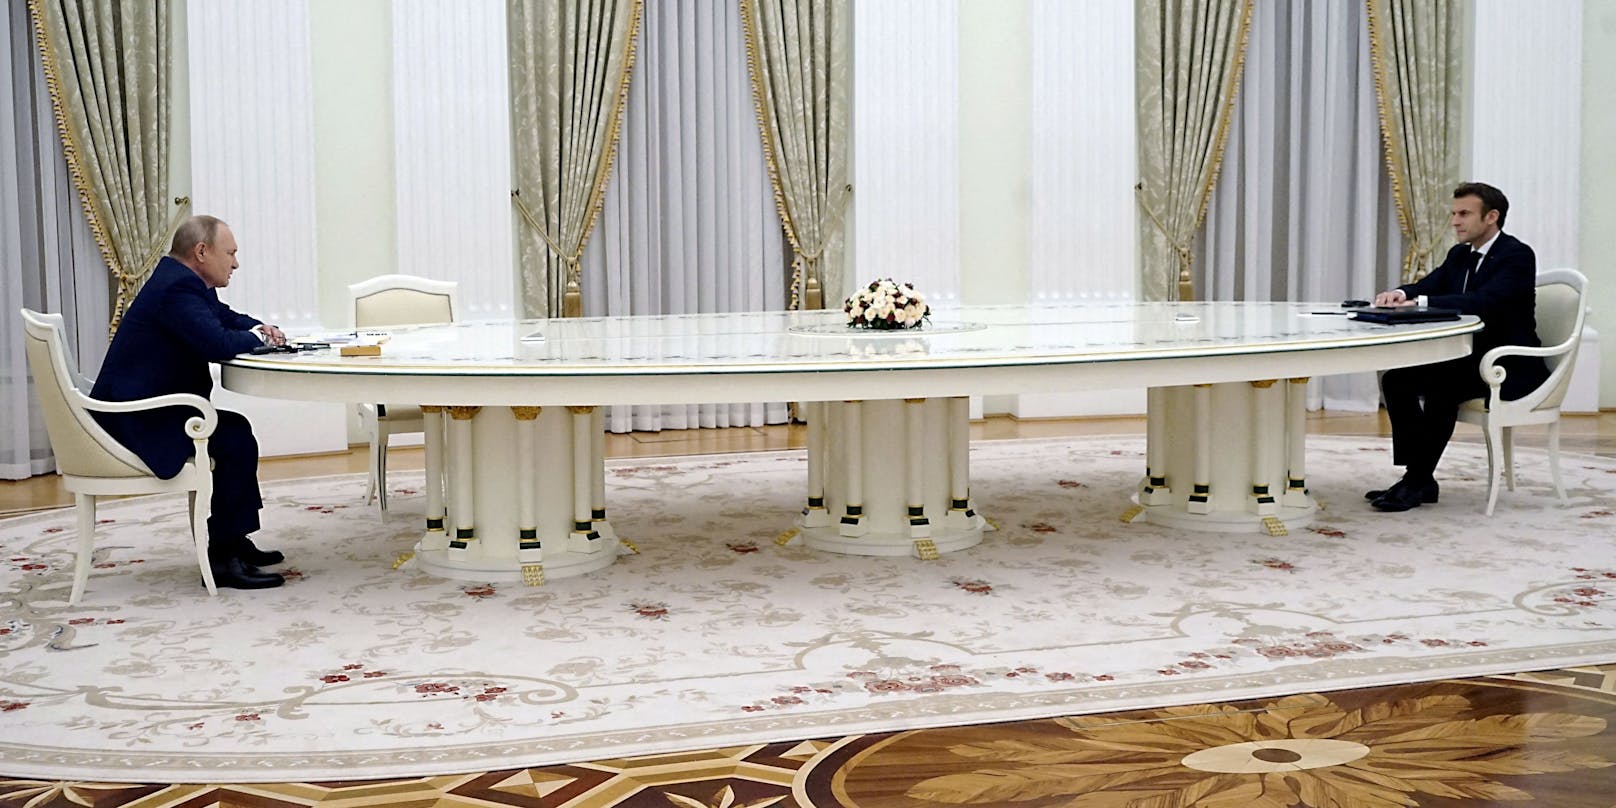 Da musste man wohl lauter sprechen: Wladimir Putin und Emmanuel Macron an einem sechs Meter langen Tisch im Kreml.